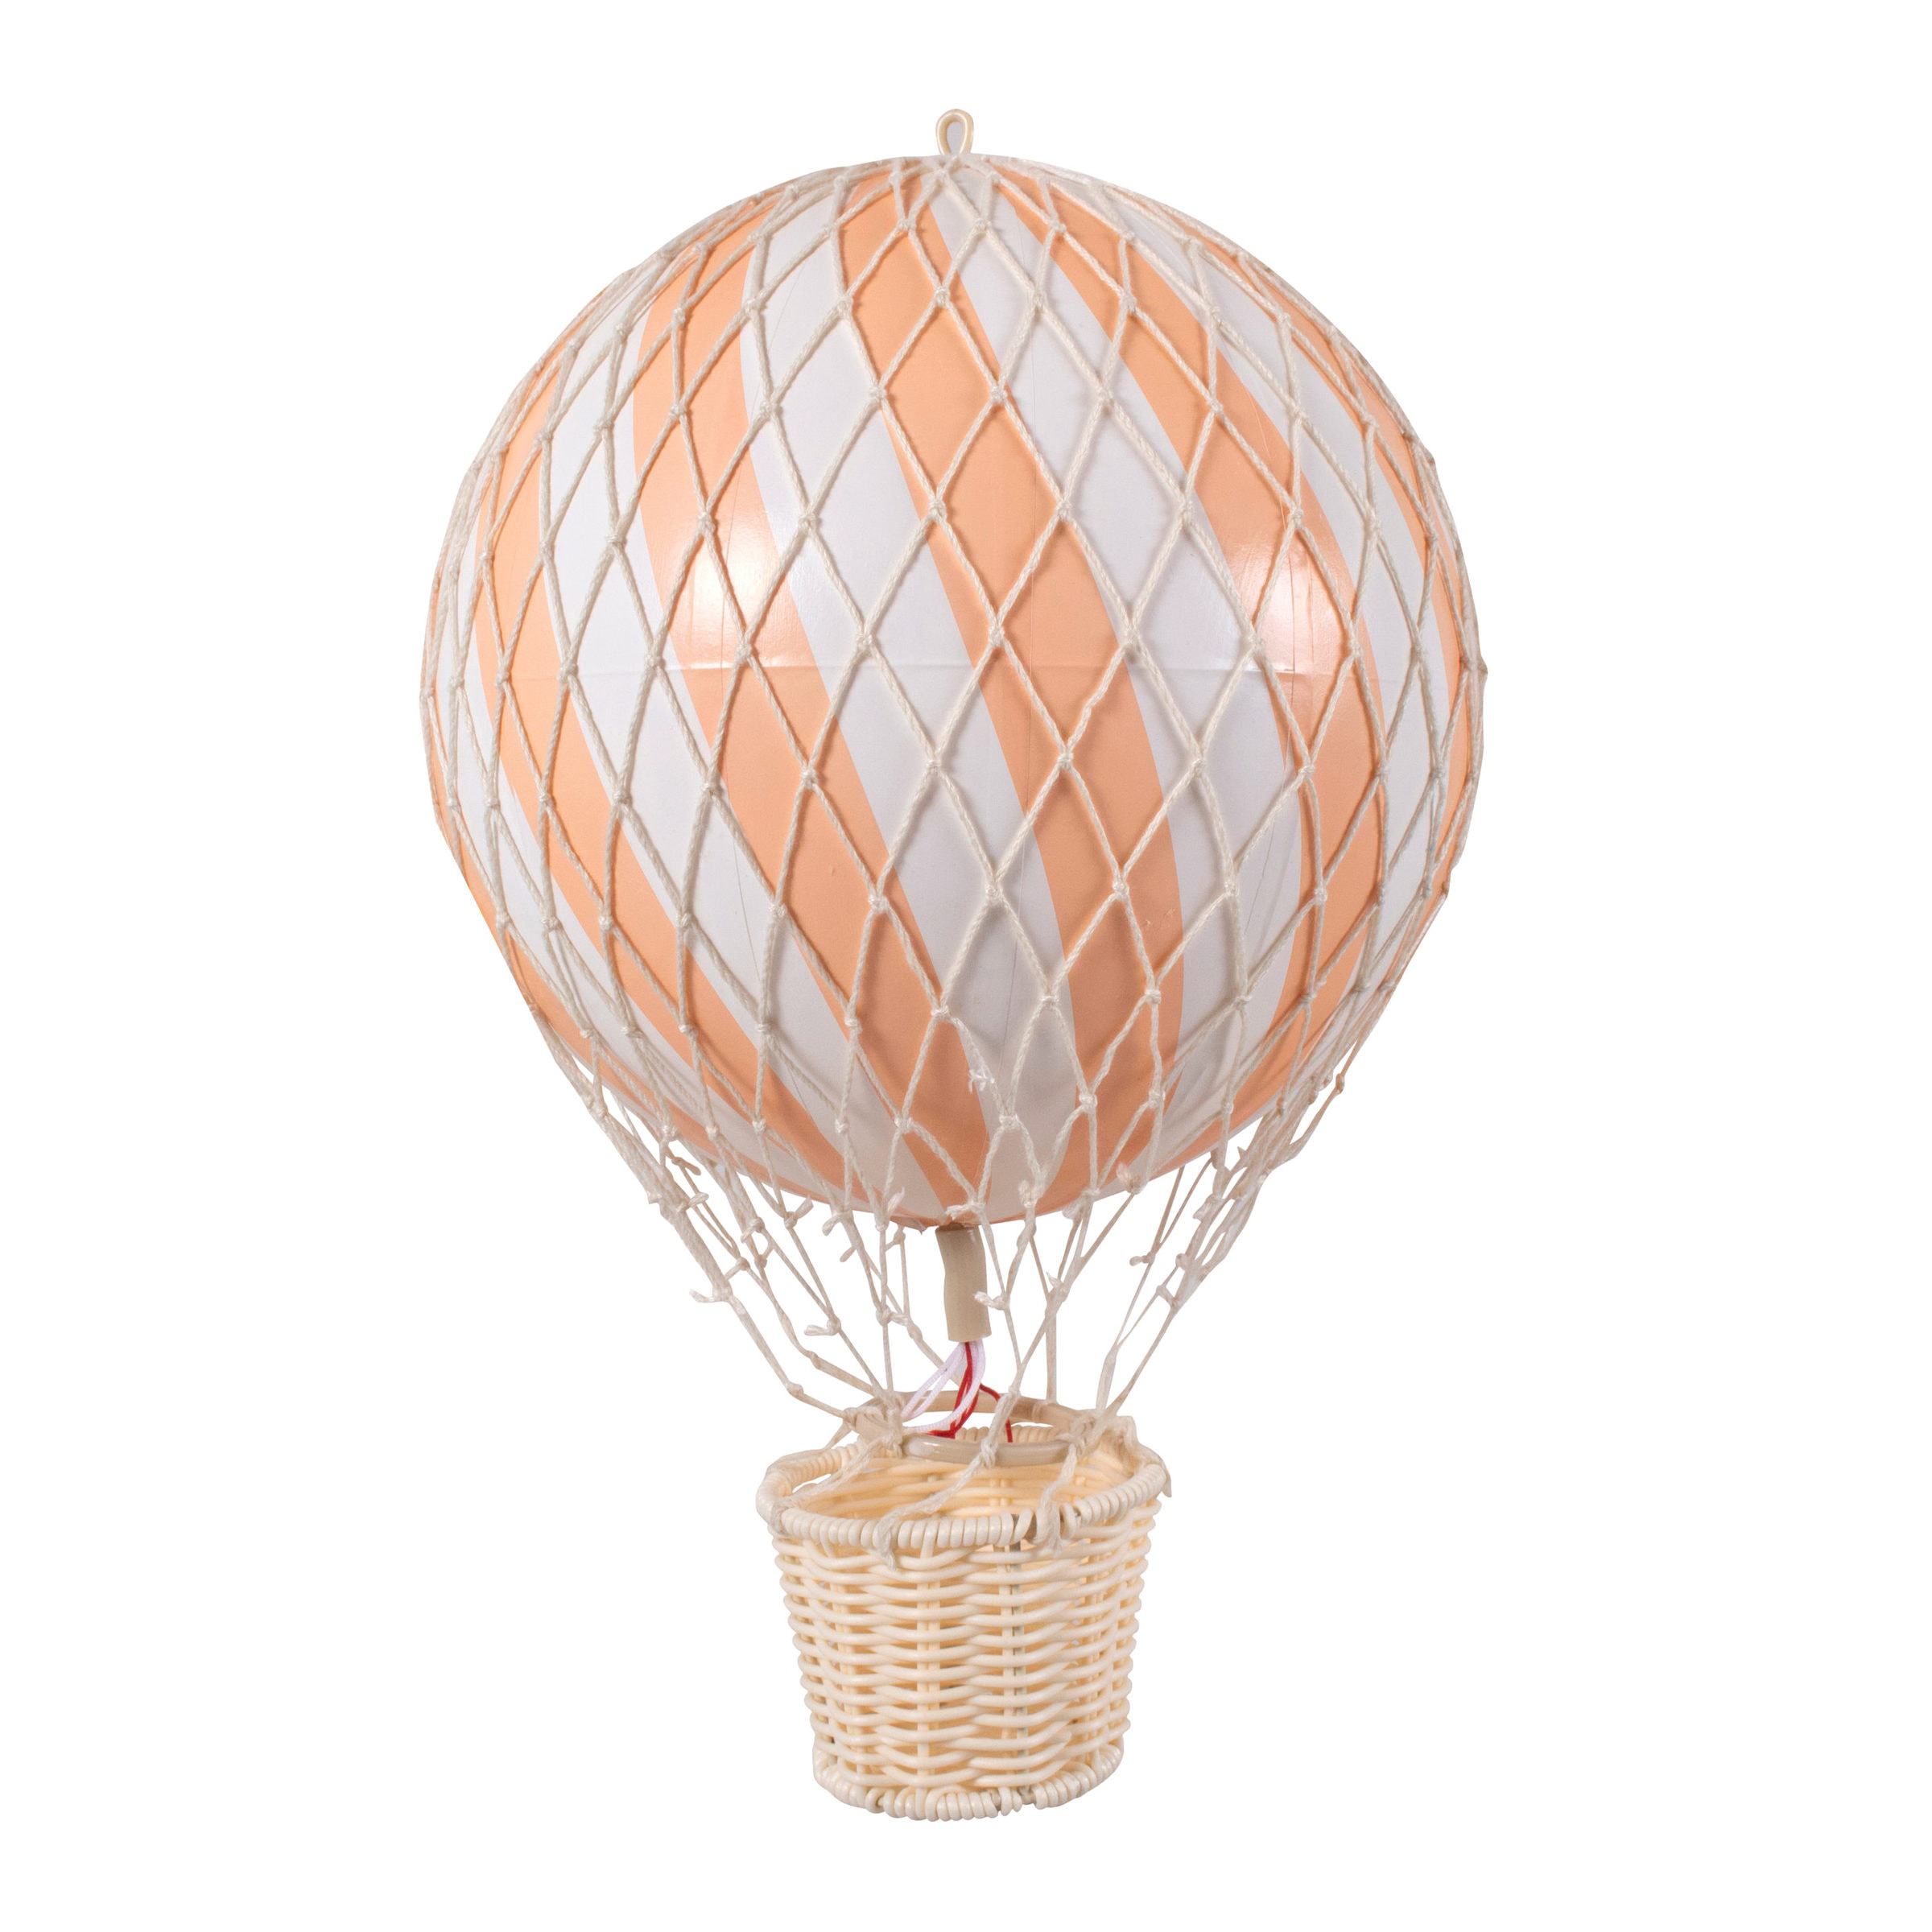 Filibabba - Air Balloon 20 cm - Peach (FI-20P053)